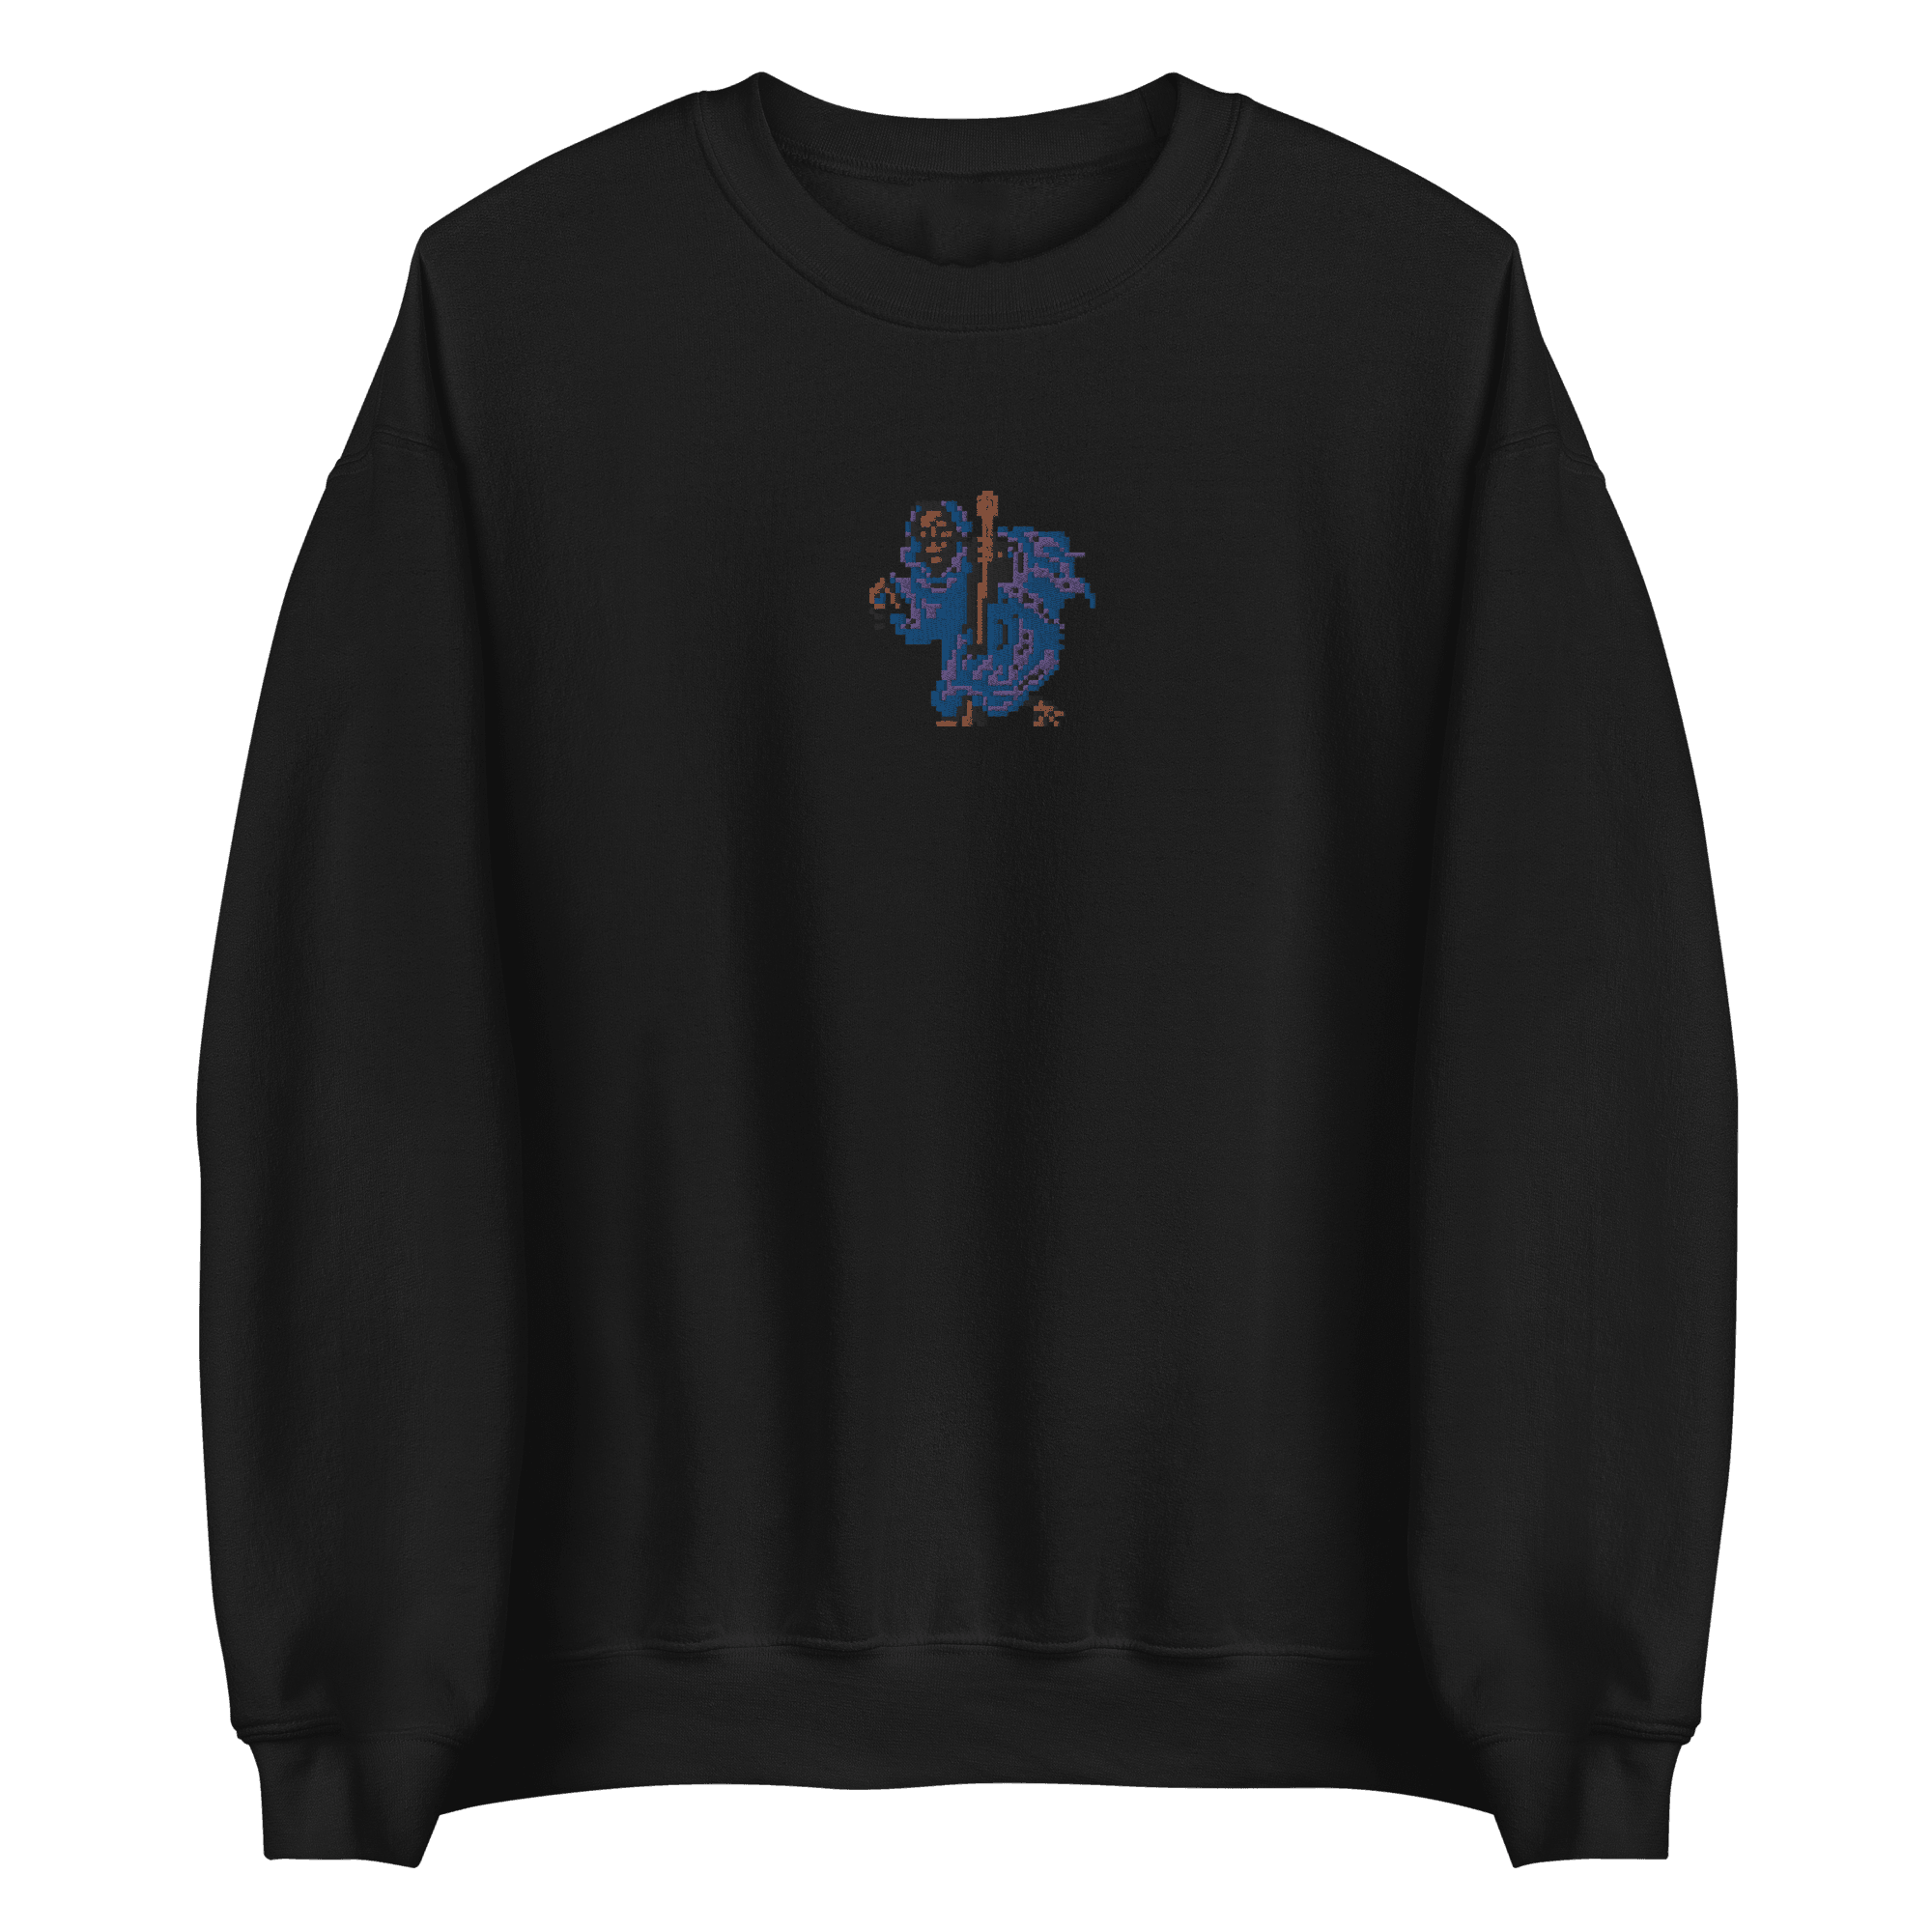 Grotesk 3® Embroidered Sweatshirt - Kikillo Club